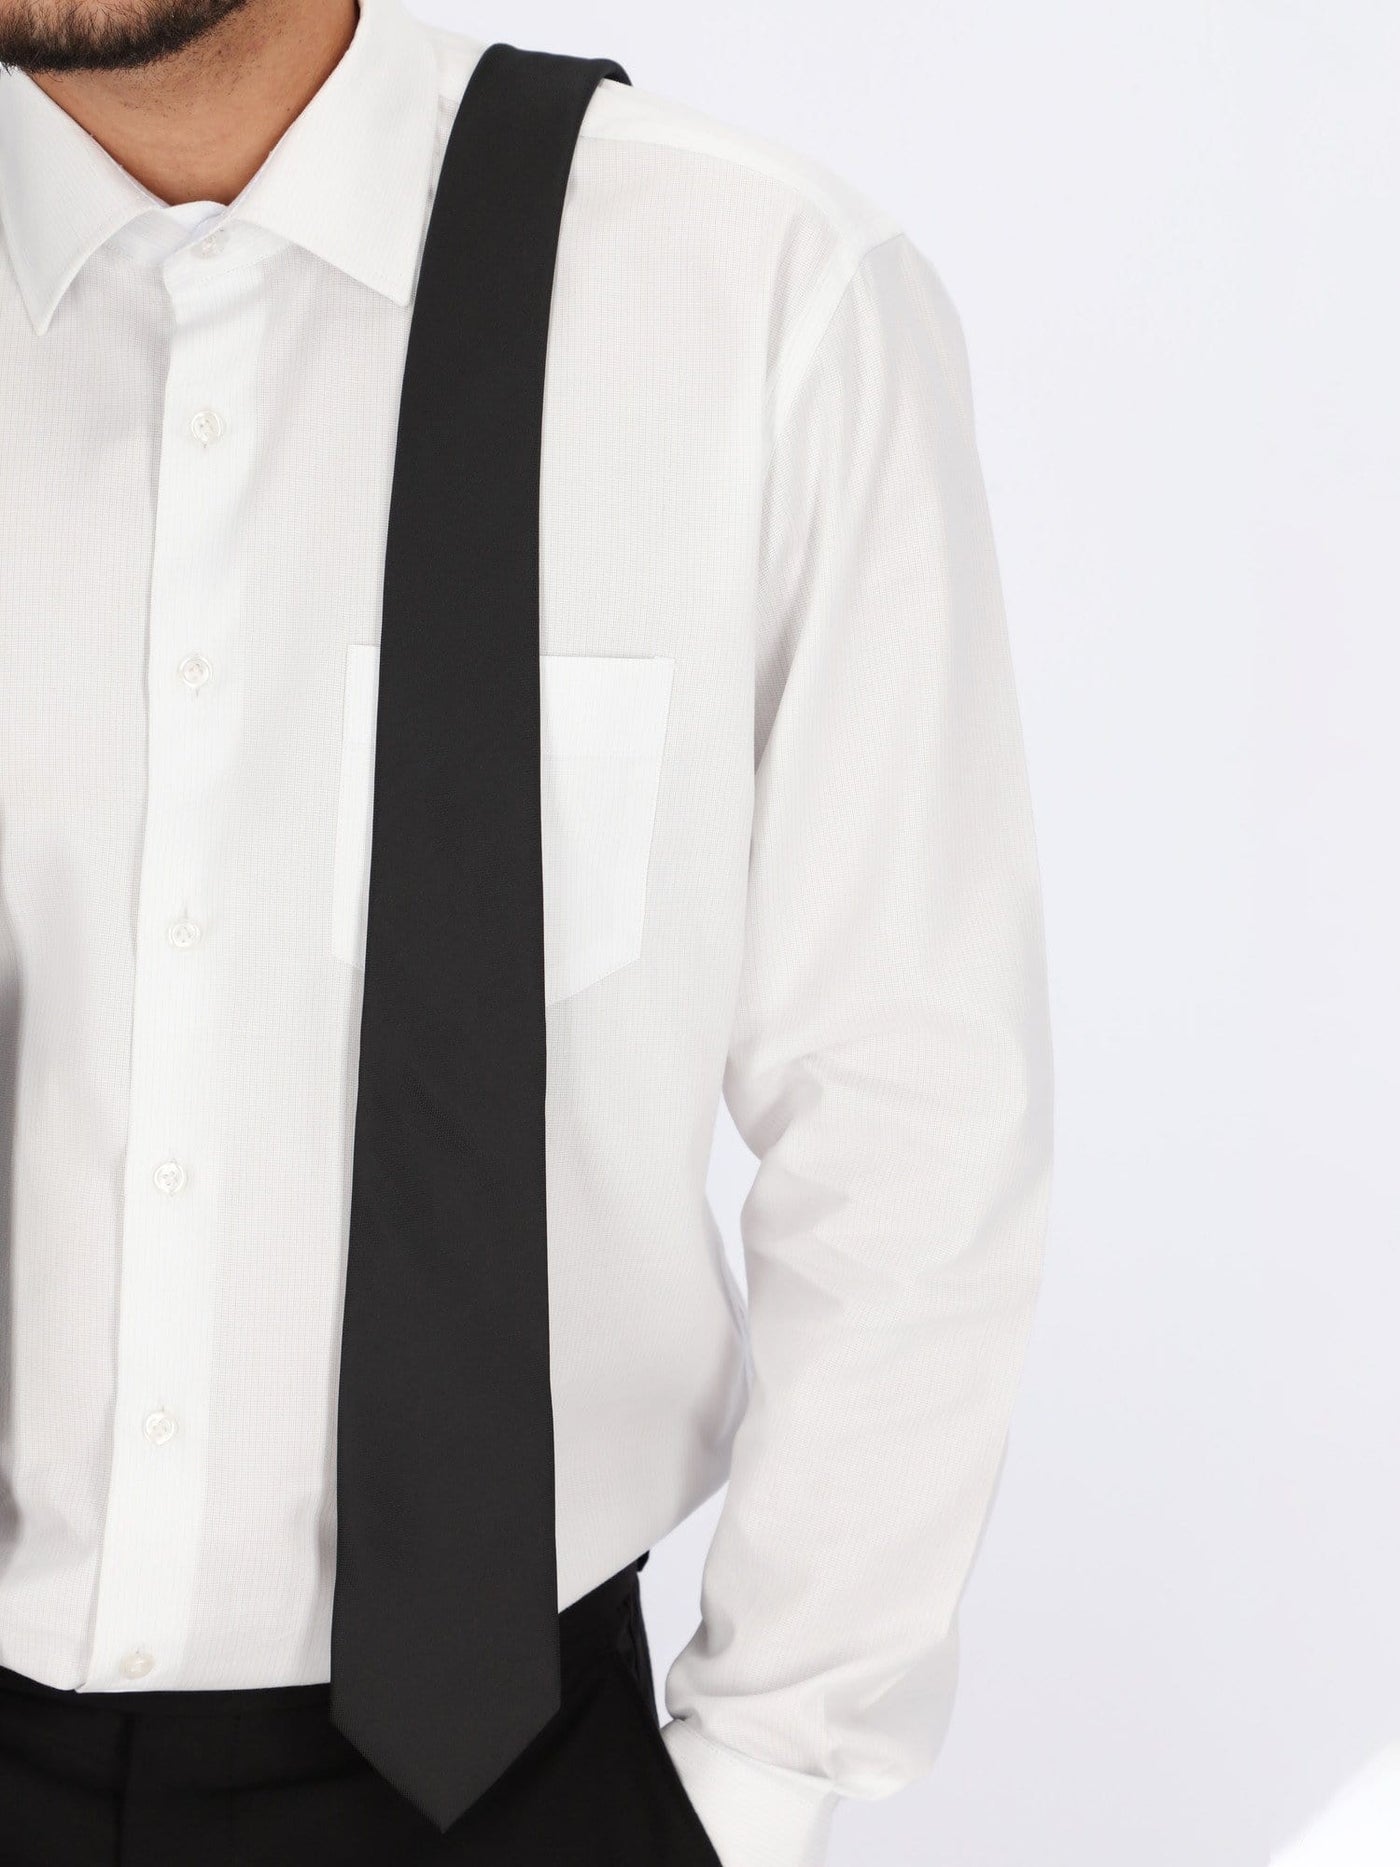 Daniel Hechter Other Accessories Black / One Size Plain Textured Slim Necktie